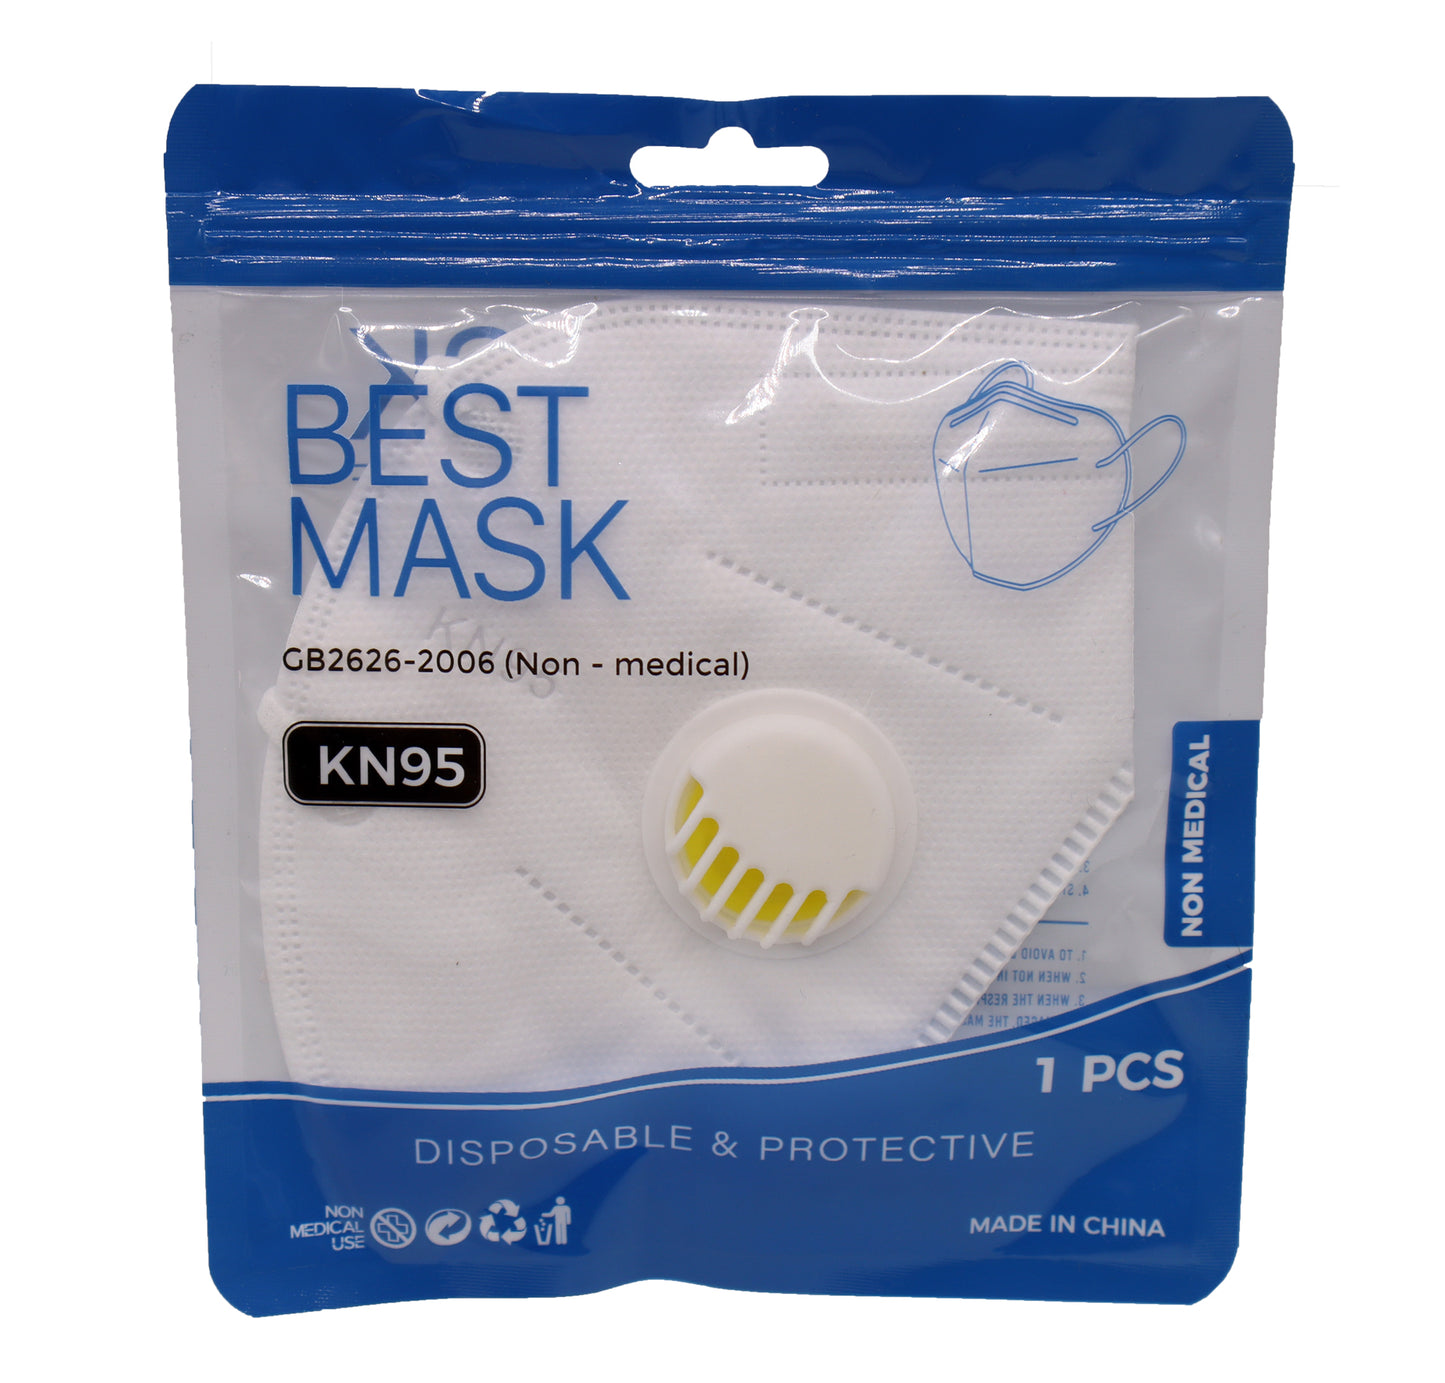 White Mask (KN95) - Filter